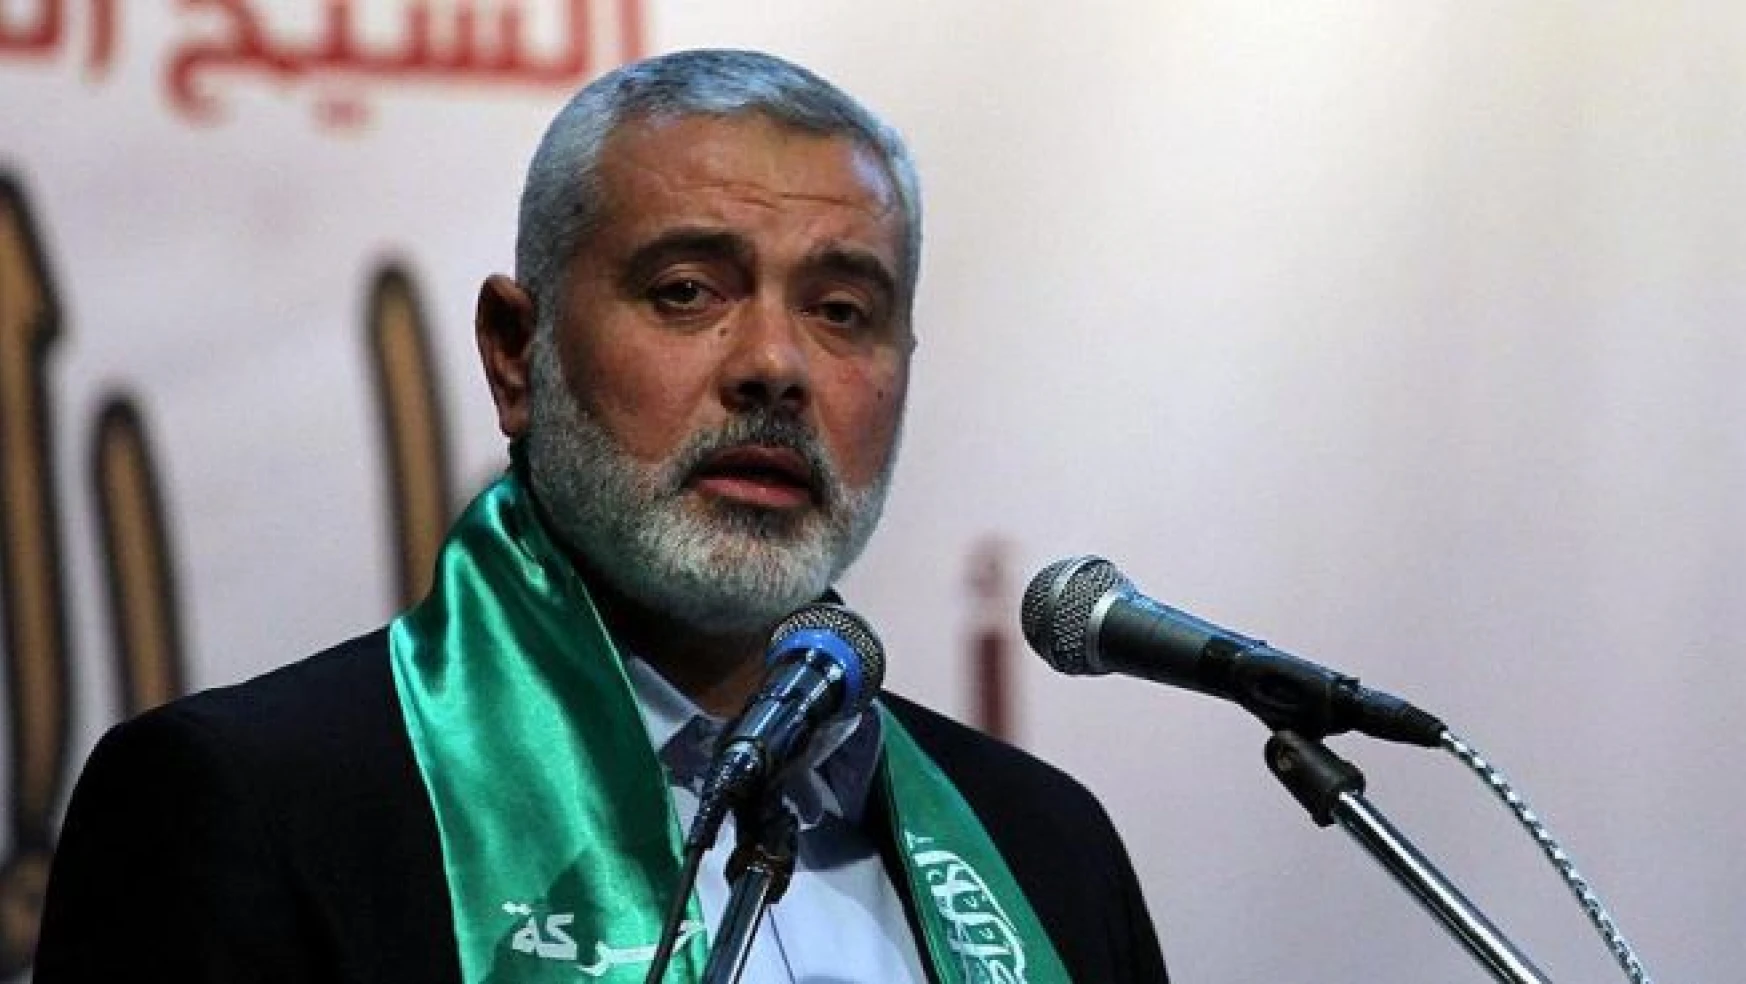 'Gazze ablukasına karşı bölünmüşlüğe son vermeye çalışıyoruz'